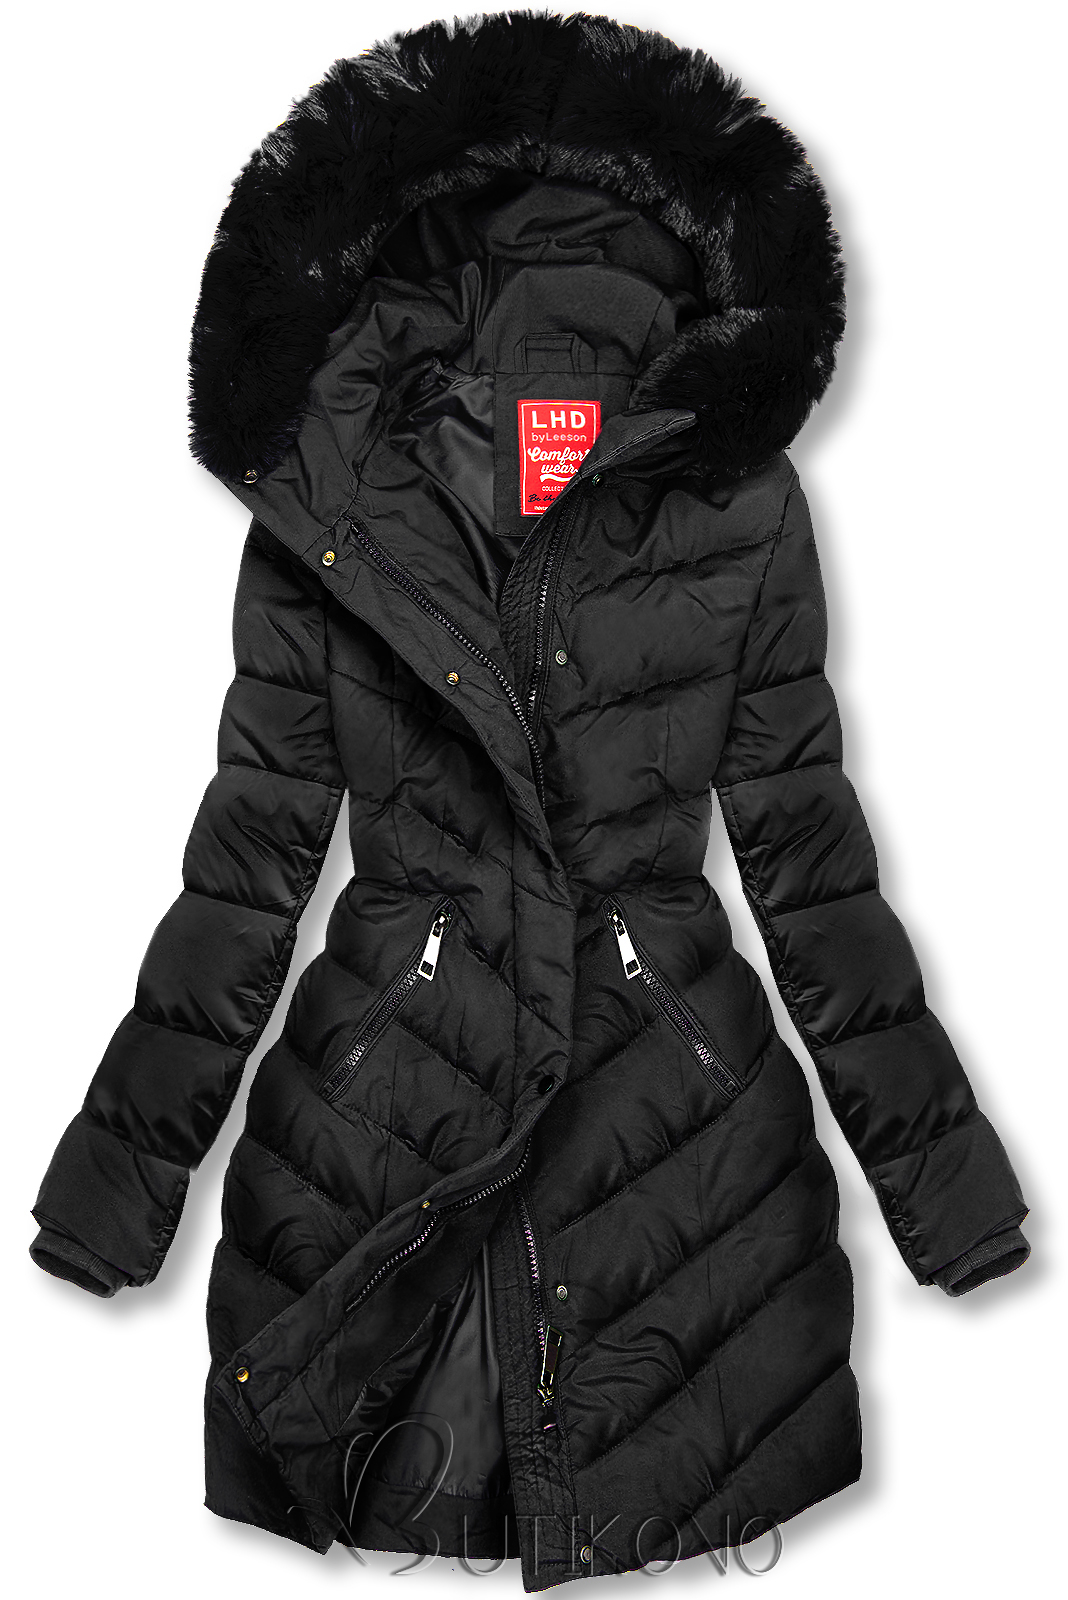 Černá zimní bunda tvarovaná pro širší boky